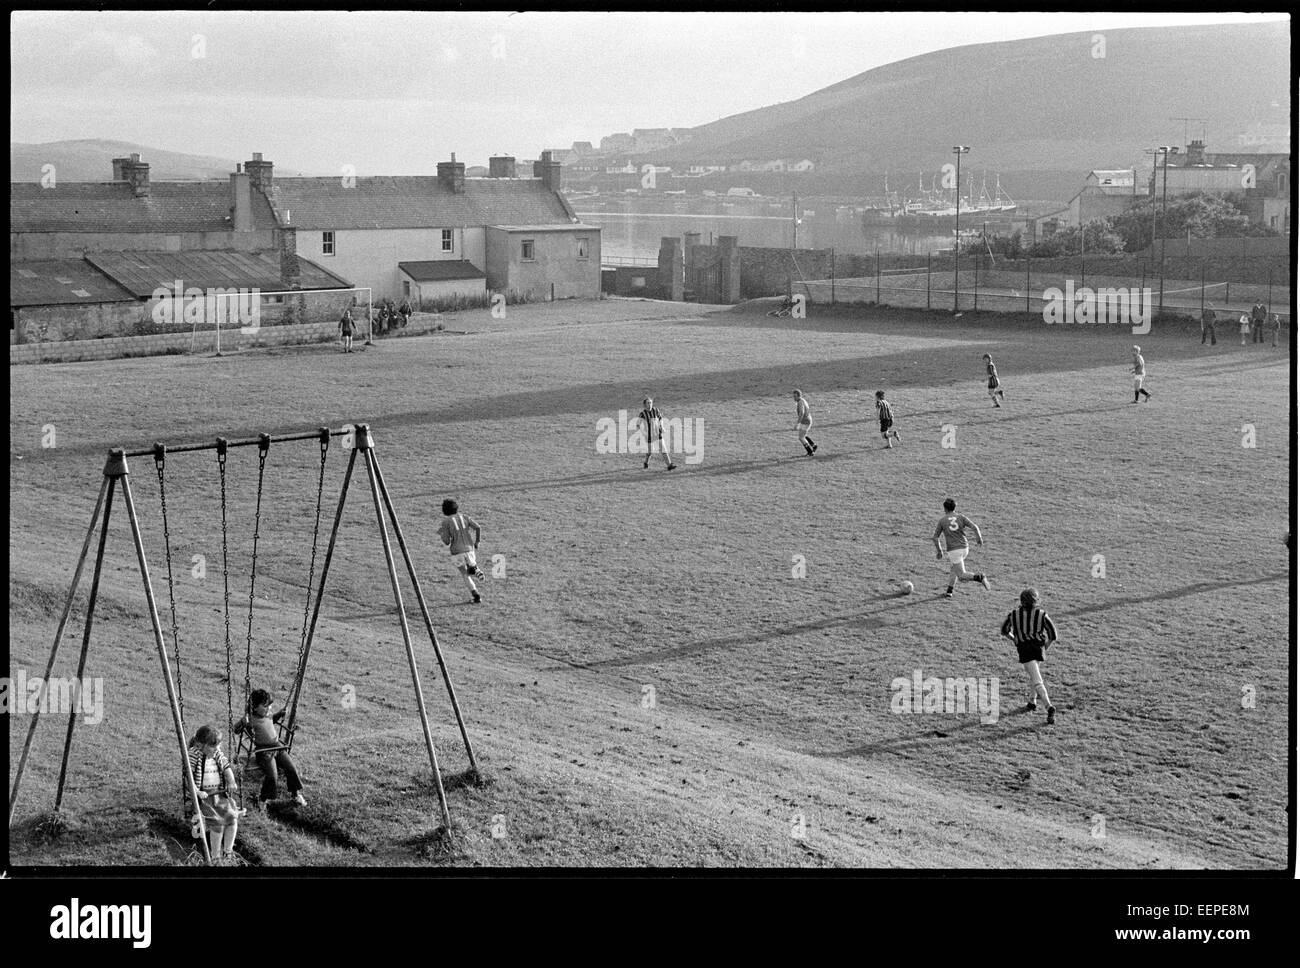 Football match, Scalloway, Shetland. Stock Photo